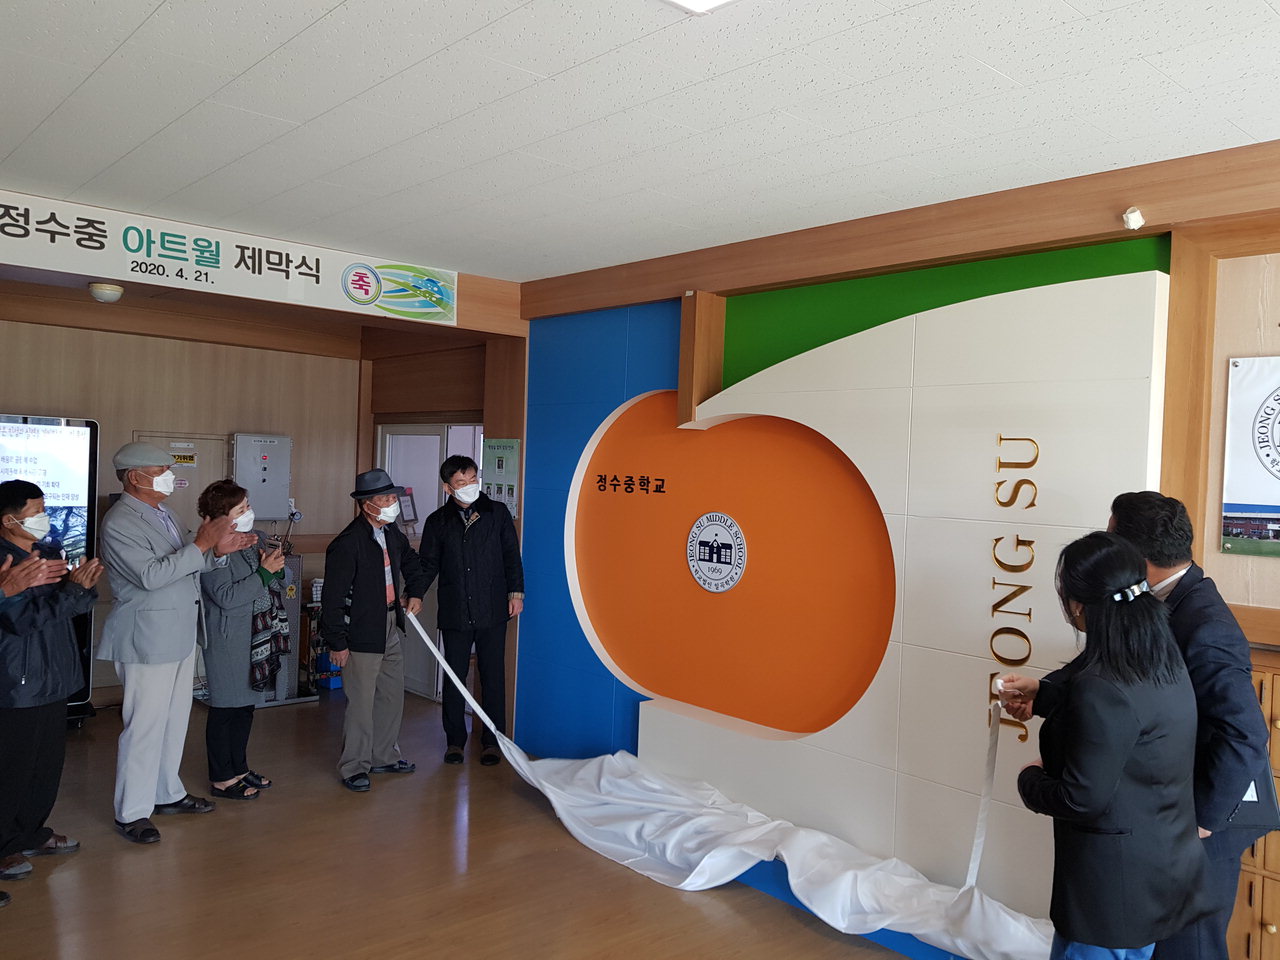 정수중학교(교장 박상윤)는 21일 학부모, 전 교직원이 참석한 가운데 현관 아트월 제막식을 진행했다. / 정수중학교 제공